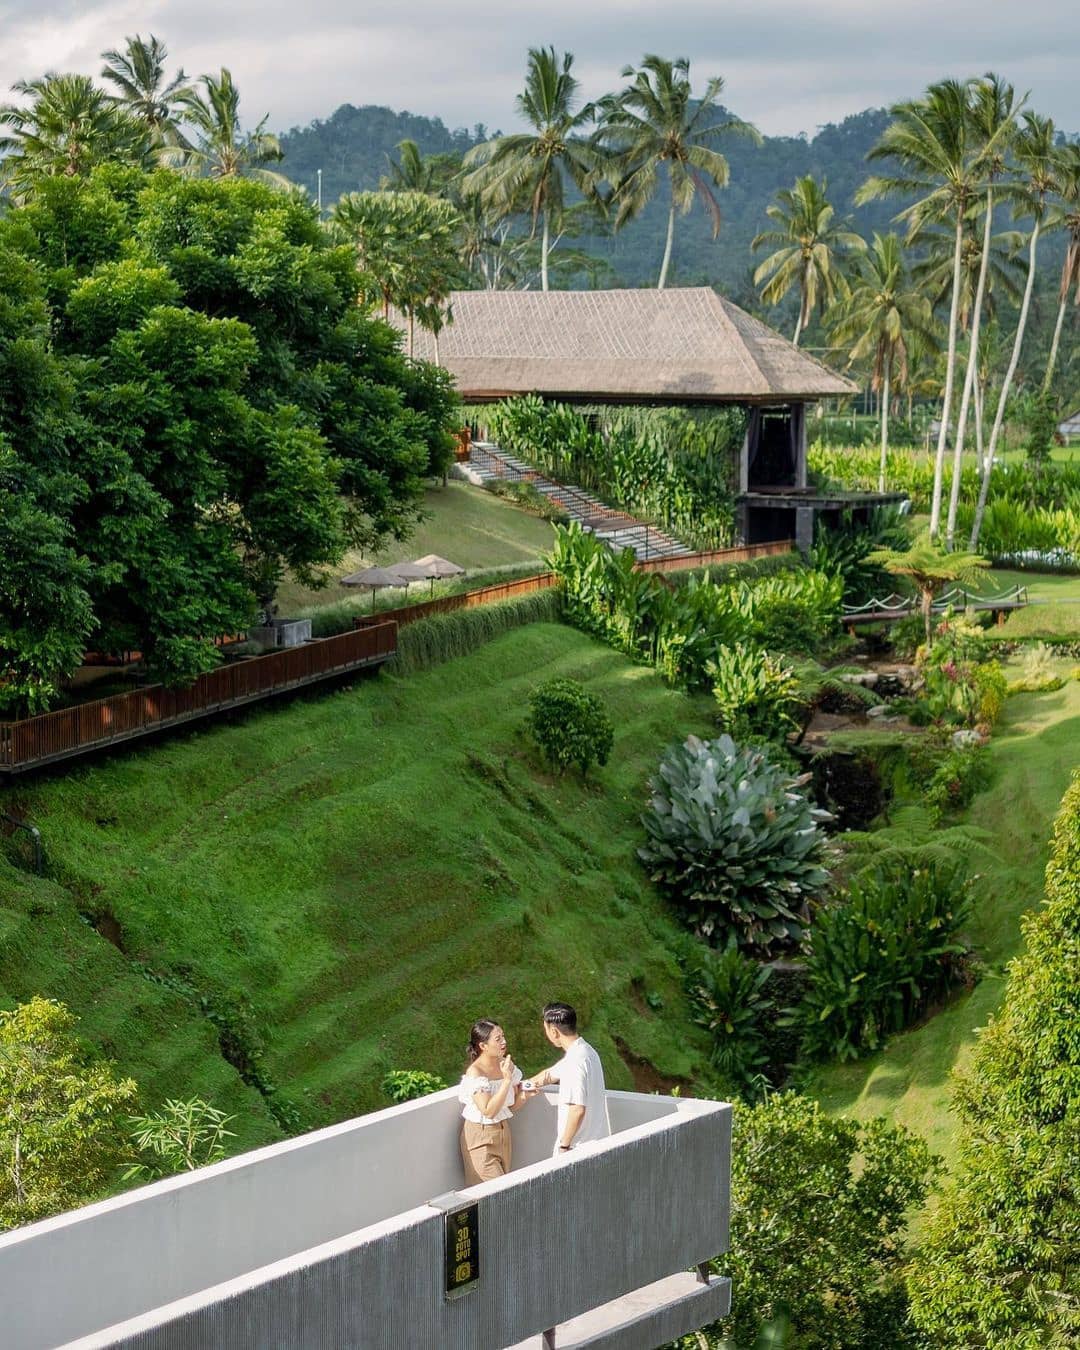 Pemandangan Di Secret Garden Village Bali Image From @welivingbali